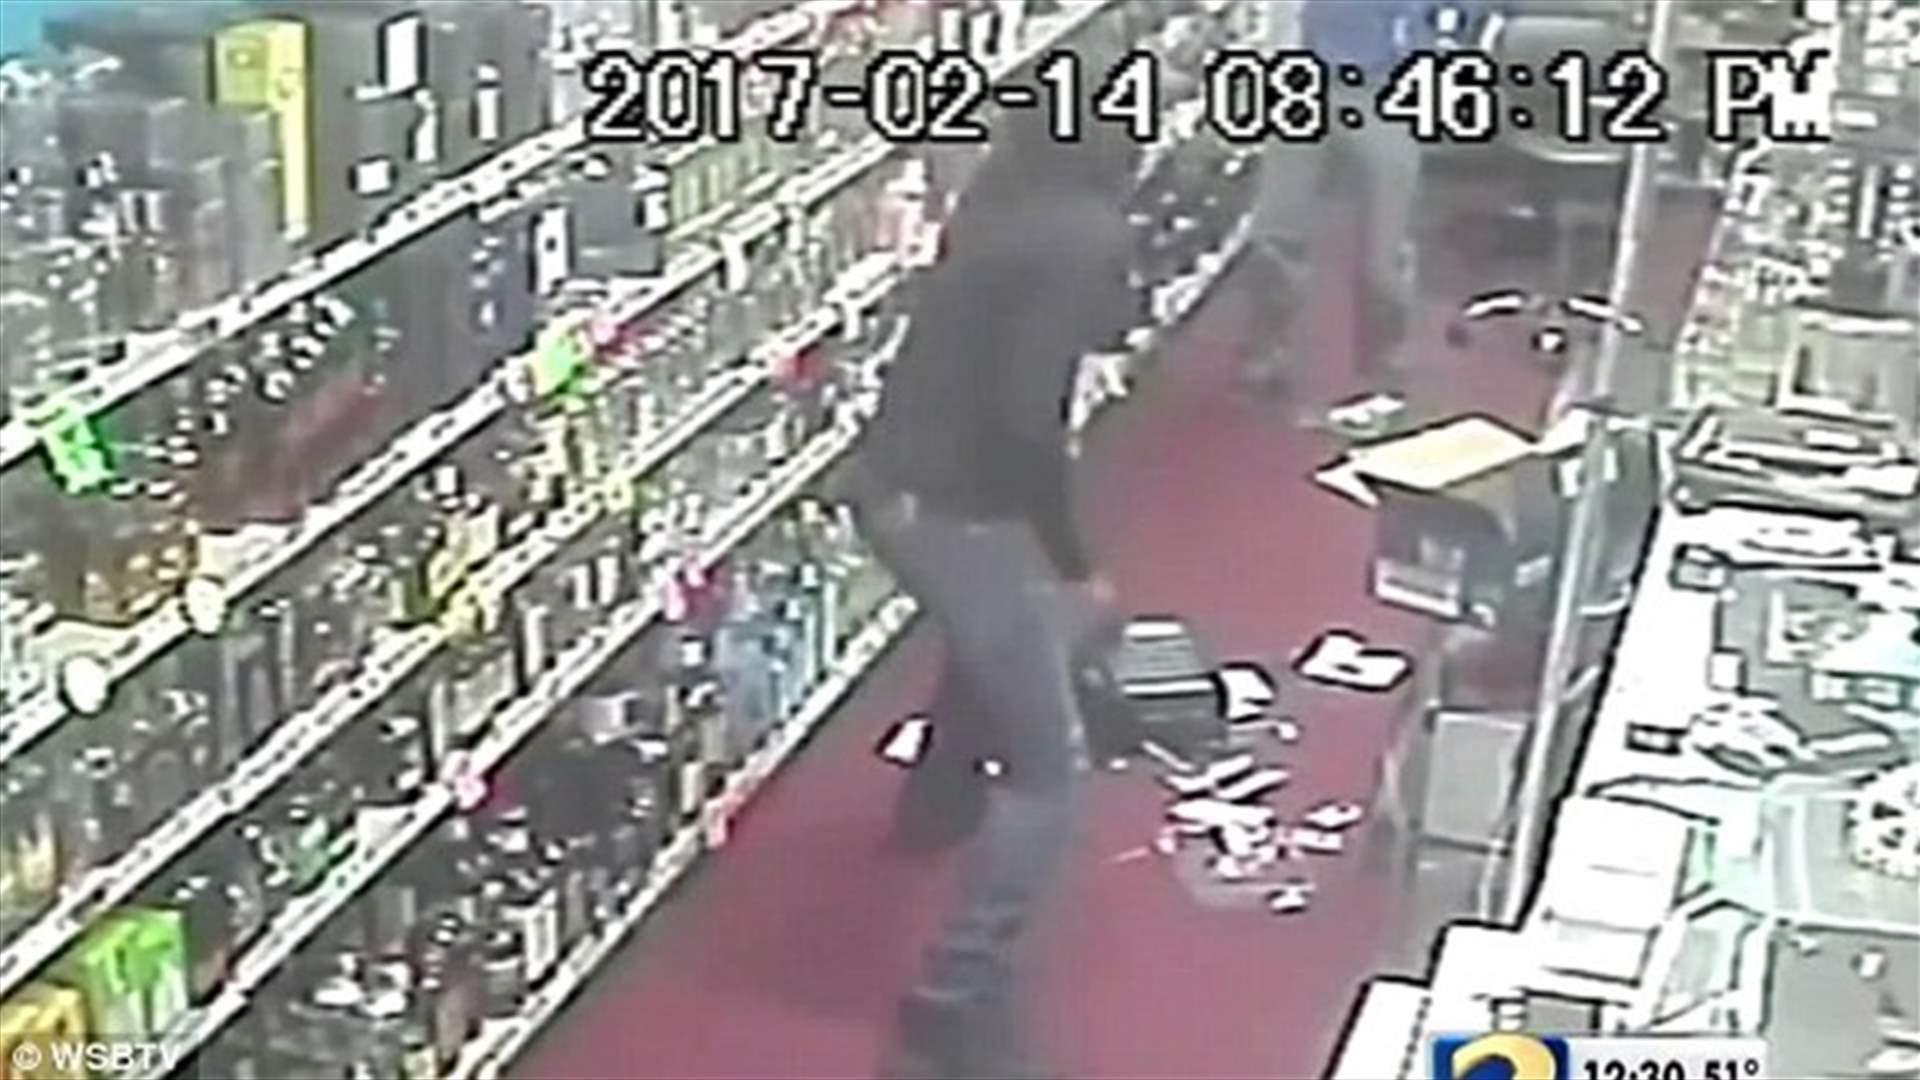 بالفيديو: دخل الى المتجر ليسرقه... فخرج منه جثة!